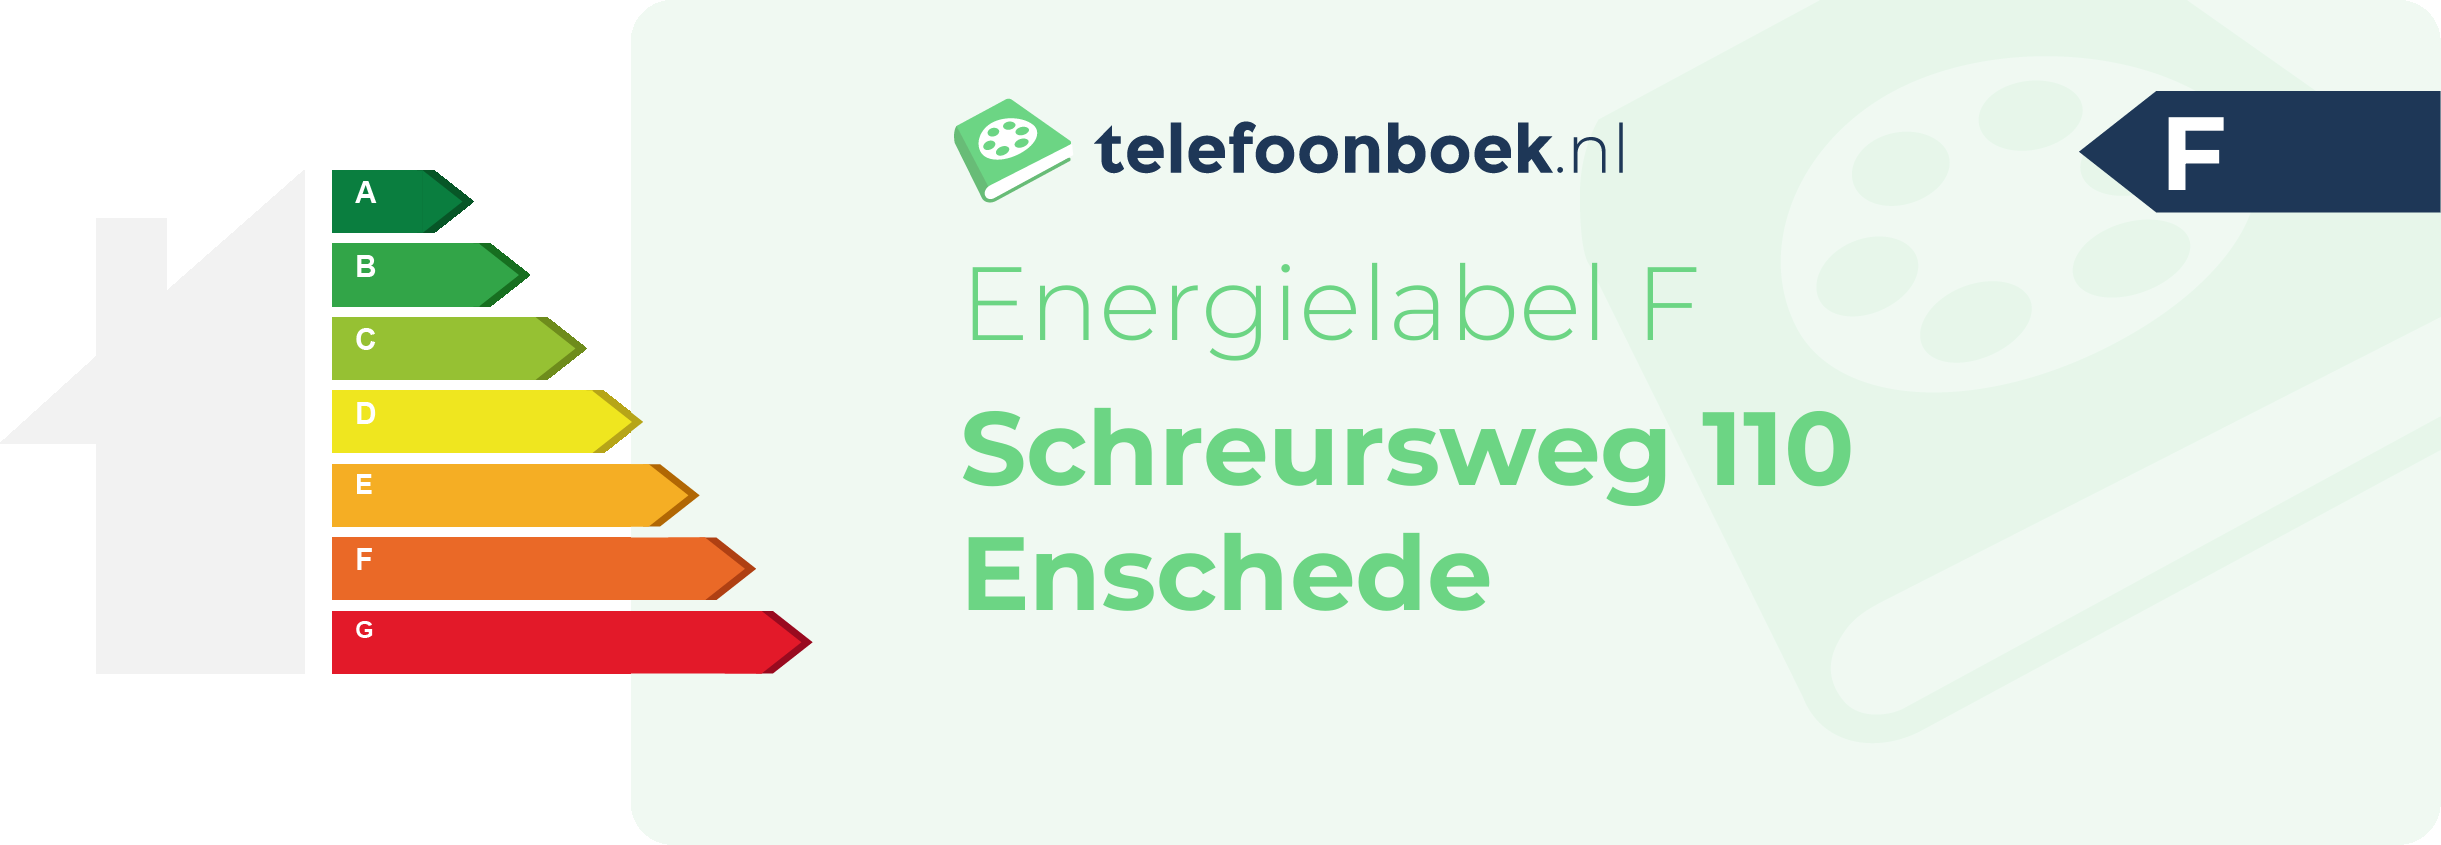 Energielabel Schreursweg 110 Enschede